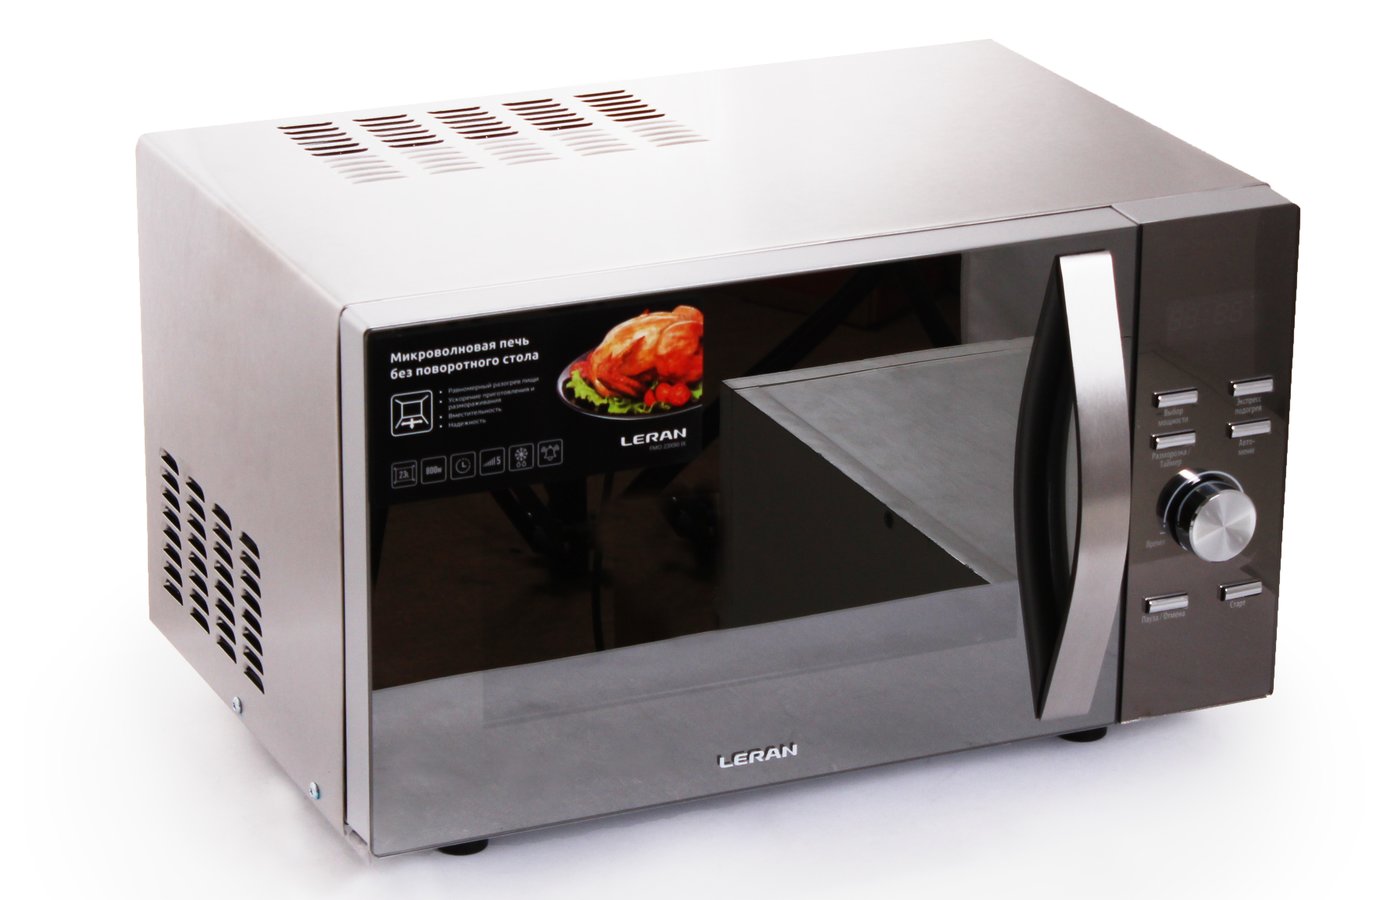 Микроволновая печь Leran FMO 23x70